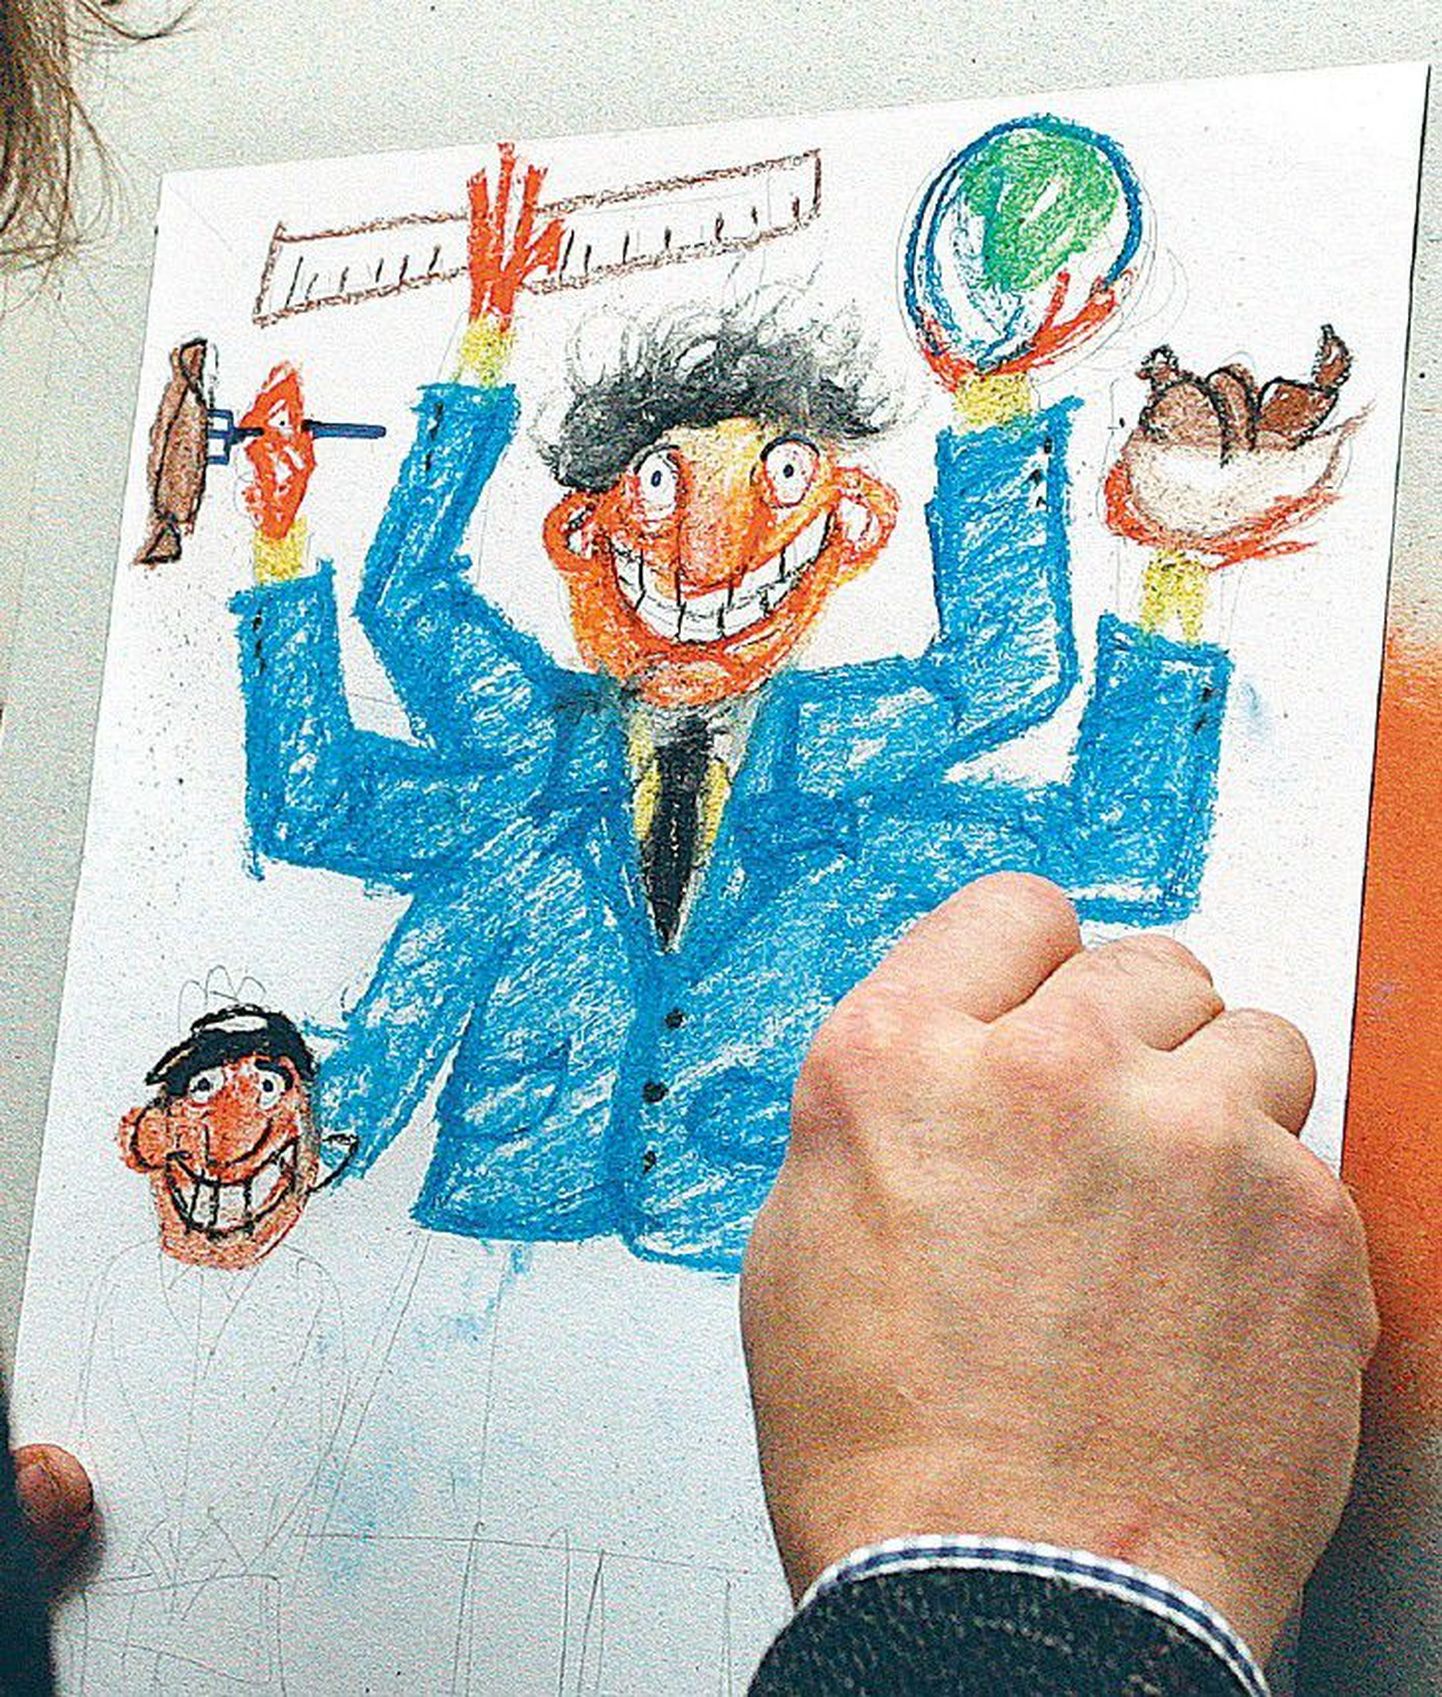 Tallinna reaalkoolis õppivate laste vanemad panid mullu paberile oma nägemuse õpetajast. Sadade õpilastega tegelemine nõuaks ühe joonistaja silmis õpetajalt mitut pead ja kätt.